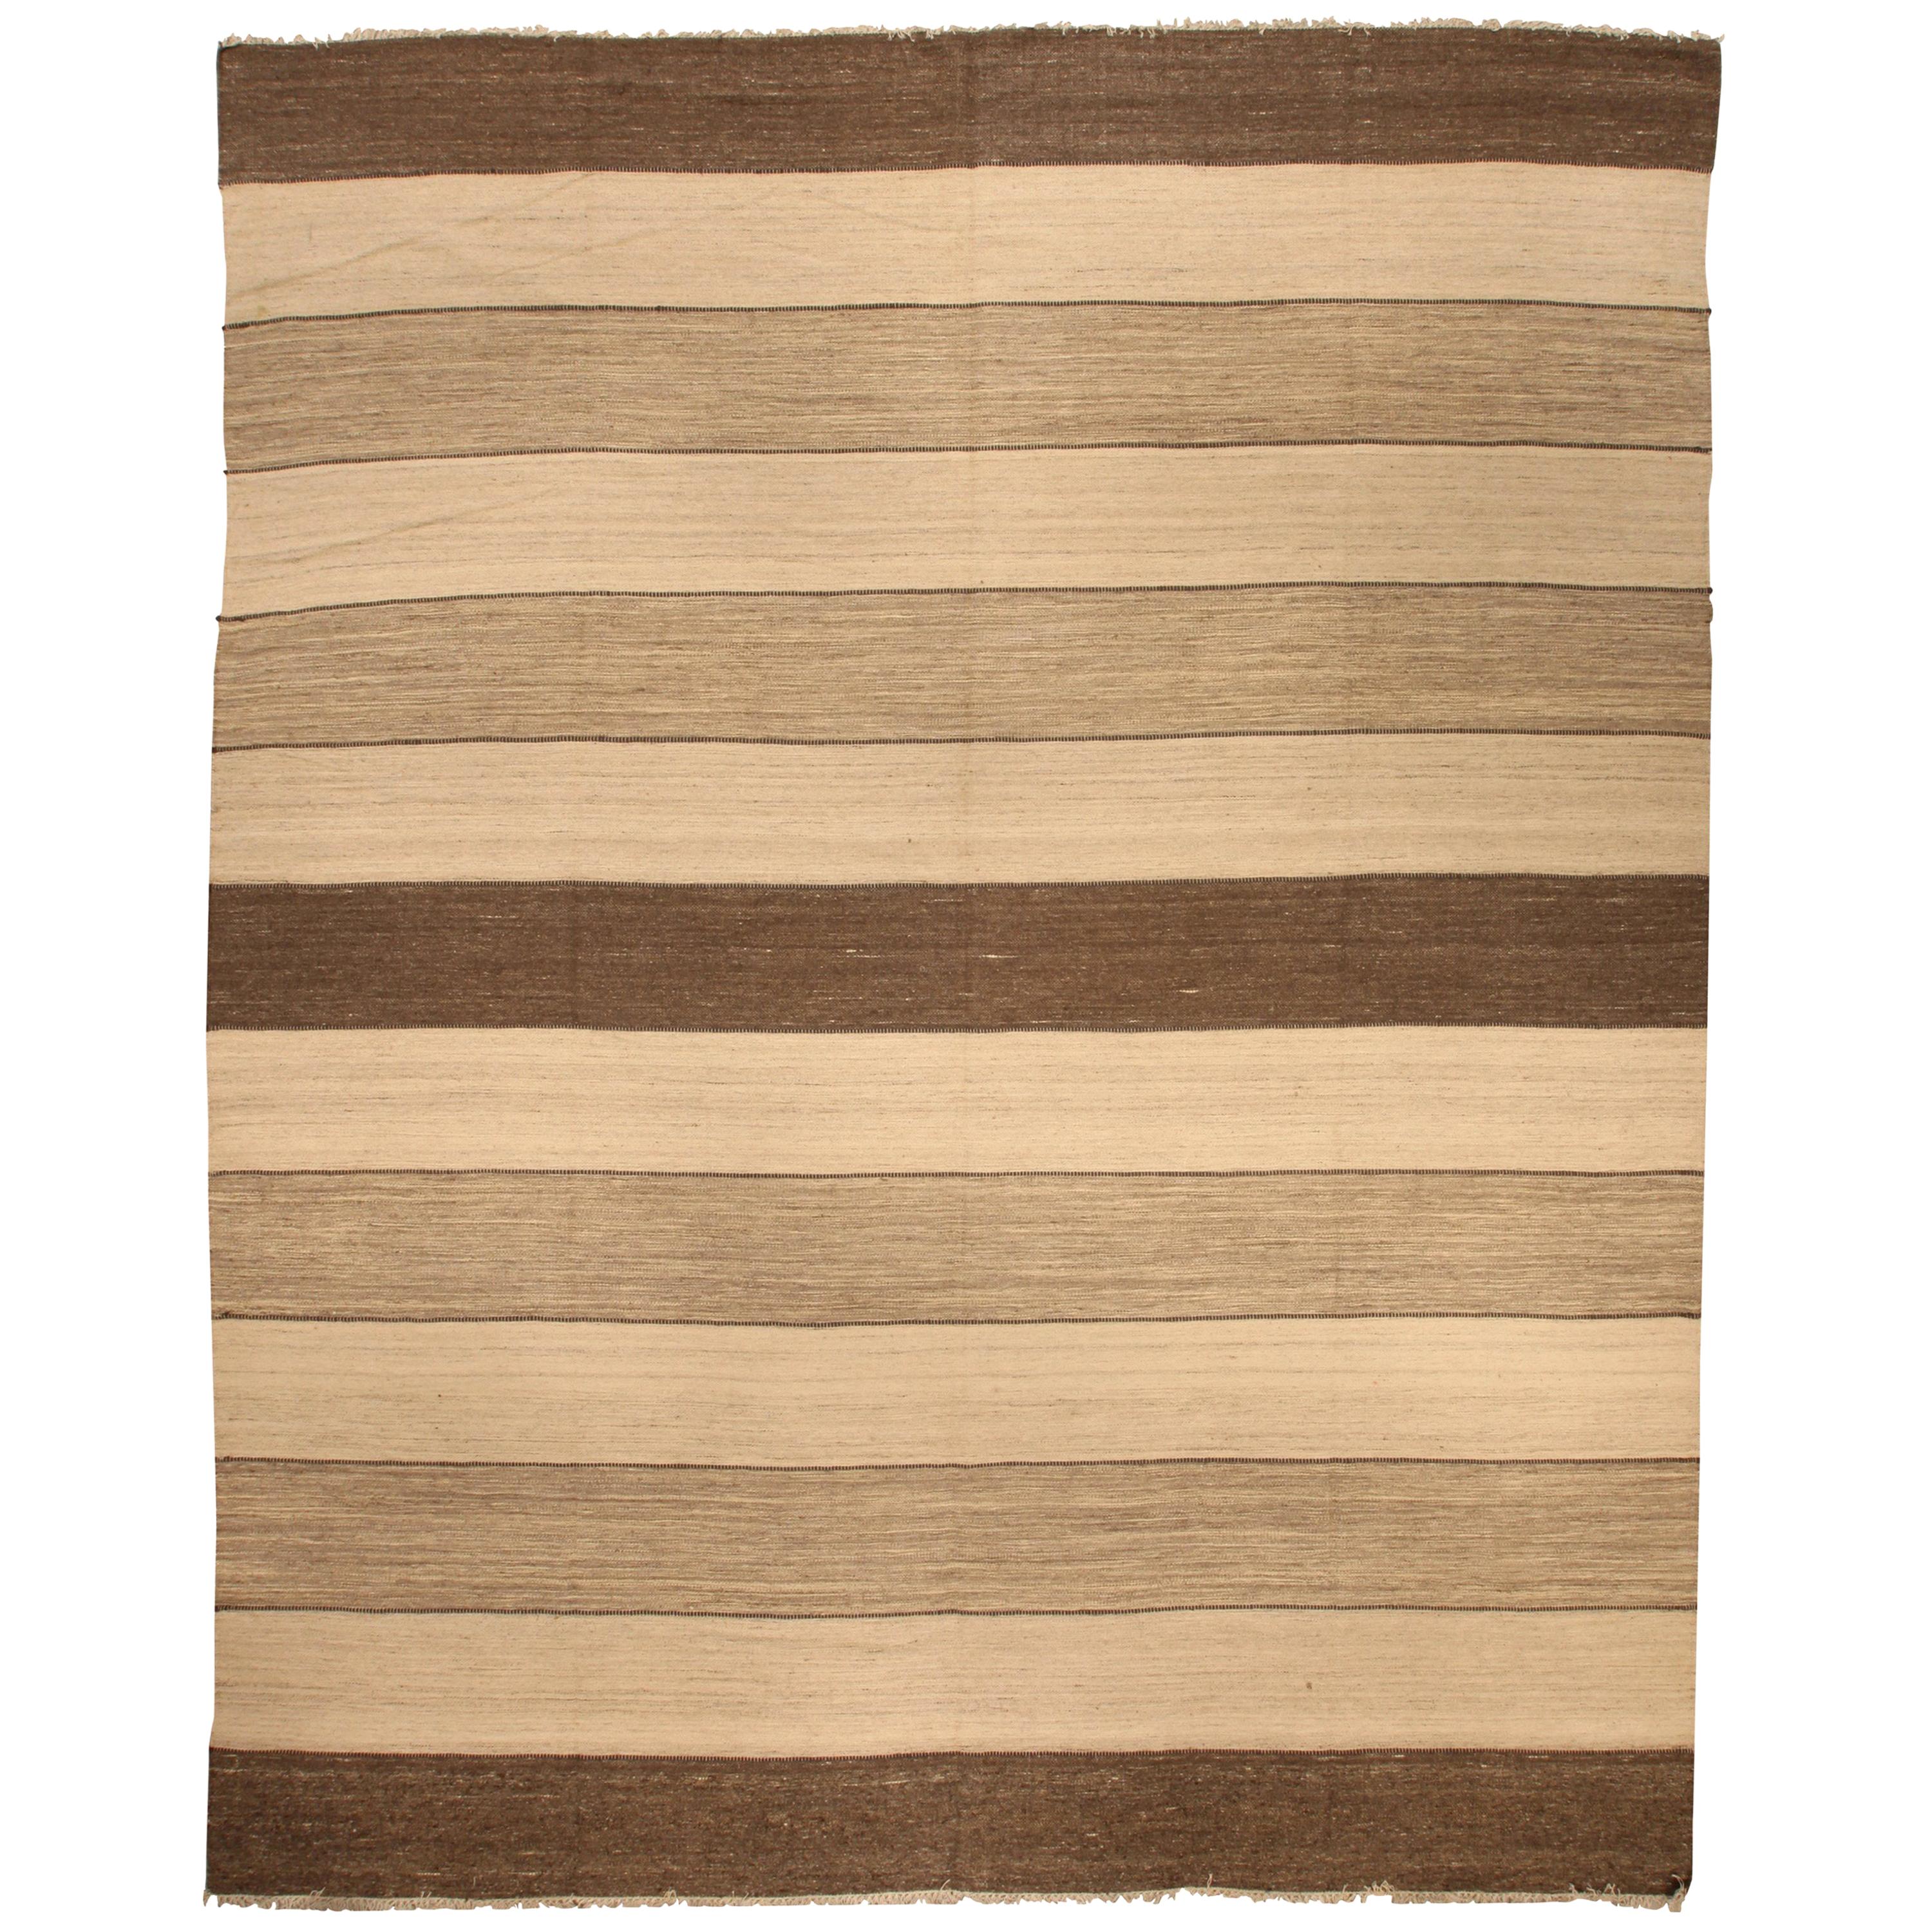 Doris Leslie Blau Collection Modern Striped Natural Flat-Weave Rug